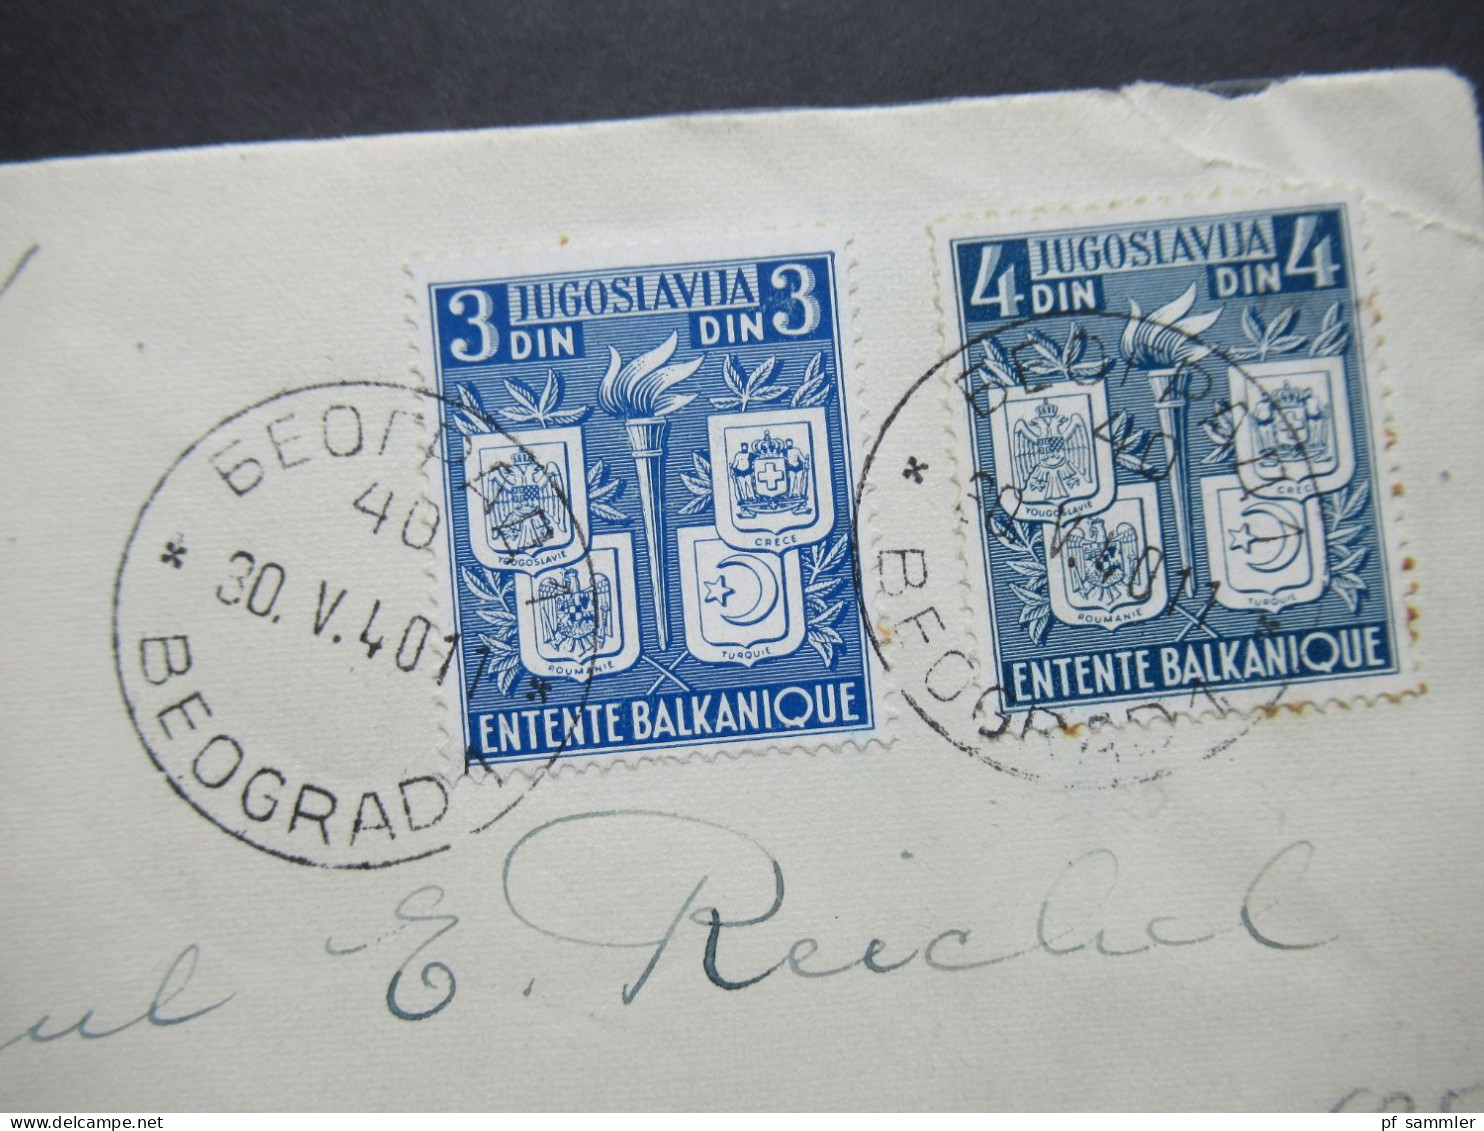 Jugoslawien 1940 Vorerstag Balkanentente Stempel Vom 30.5.1940 (1 Tag Vor Der Ausgabe!!) Luftpost Beograd - Athen - Covers & Documents